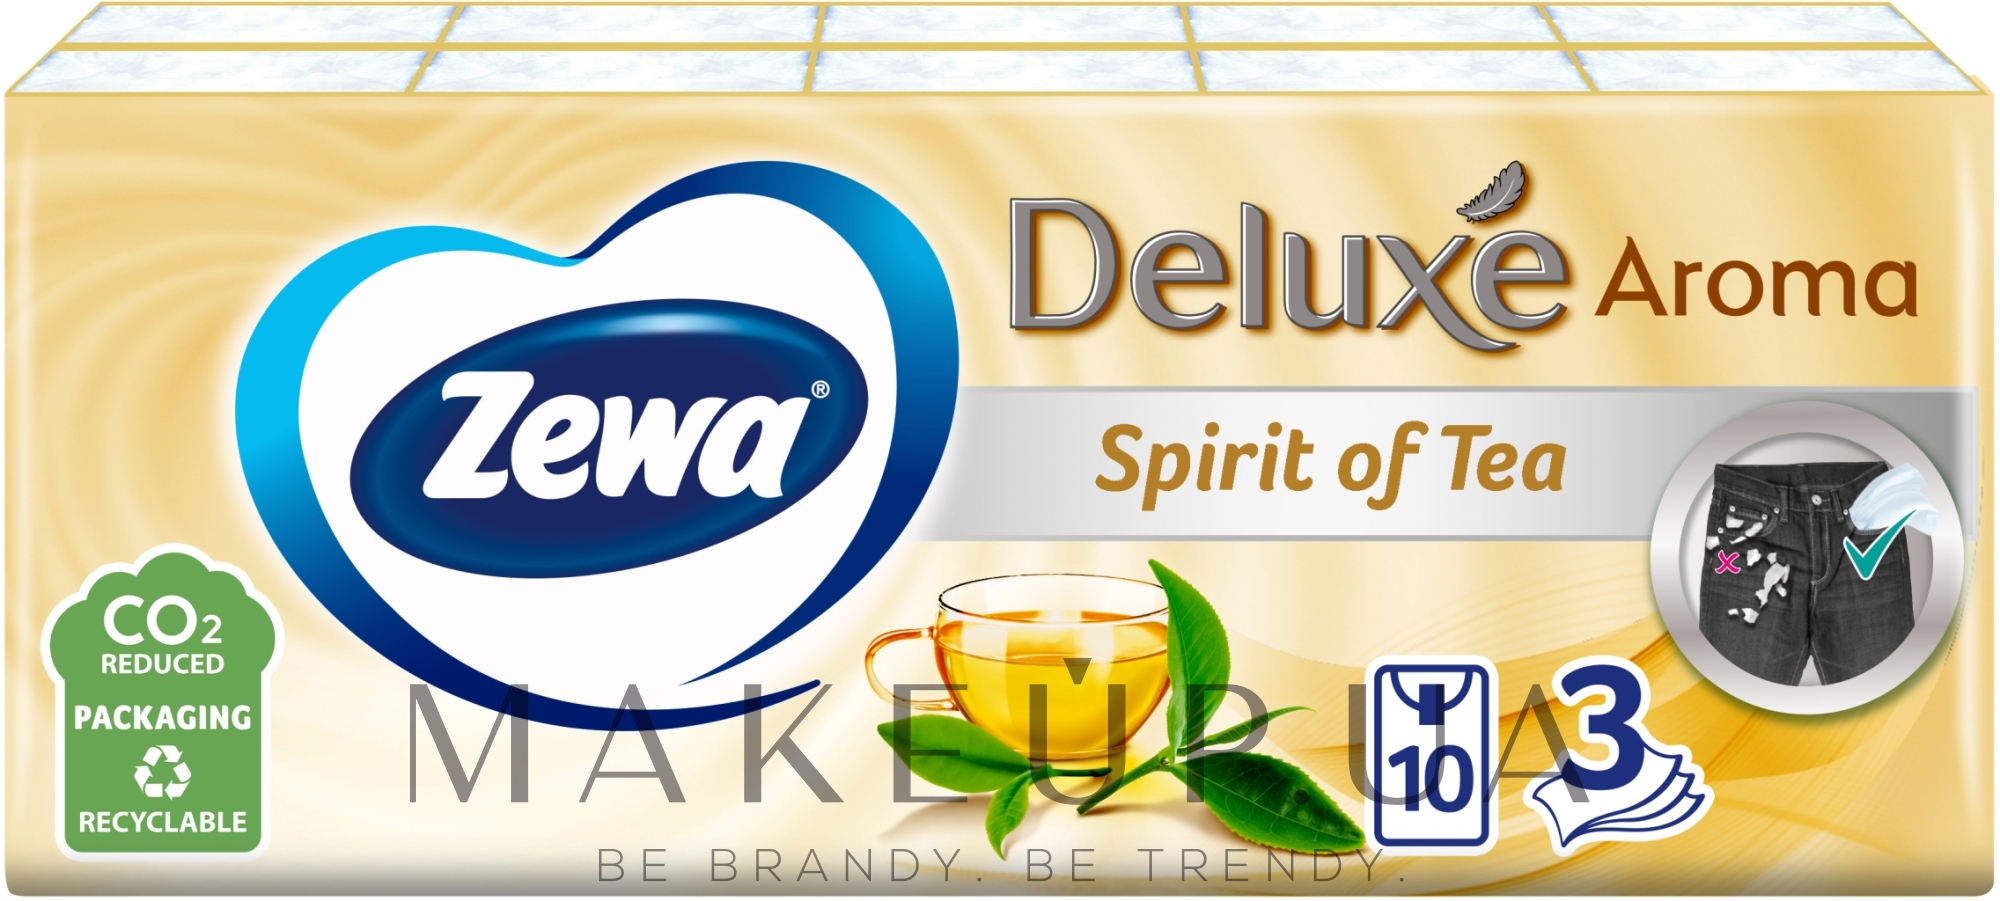 Носовые платки бумажные с ароматом зеленого чая, трехслойные, 10 упаковок по 10 шт. - Zewa Deluxe Aroma Spirit Of Tea — фото 10x10шт